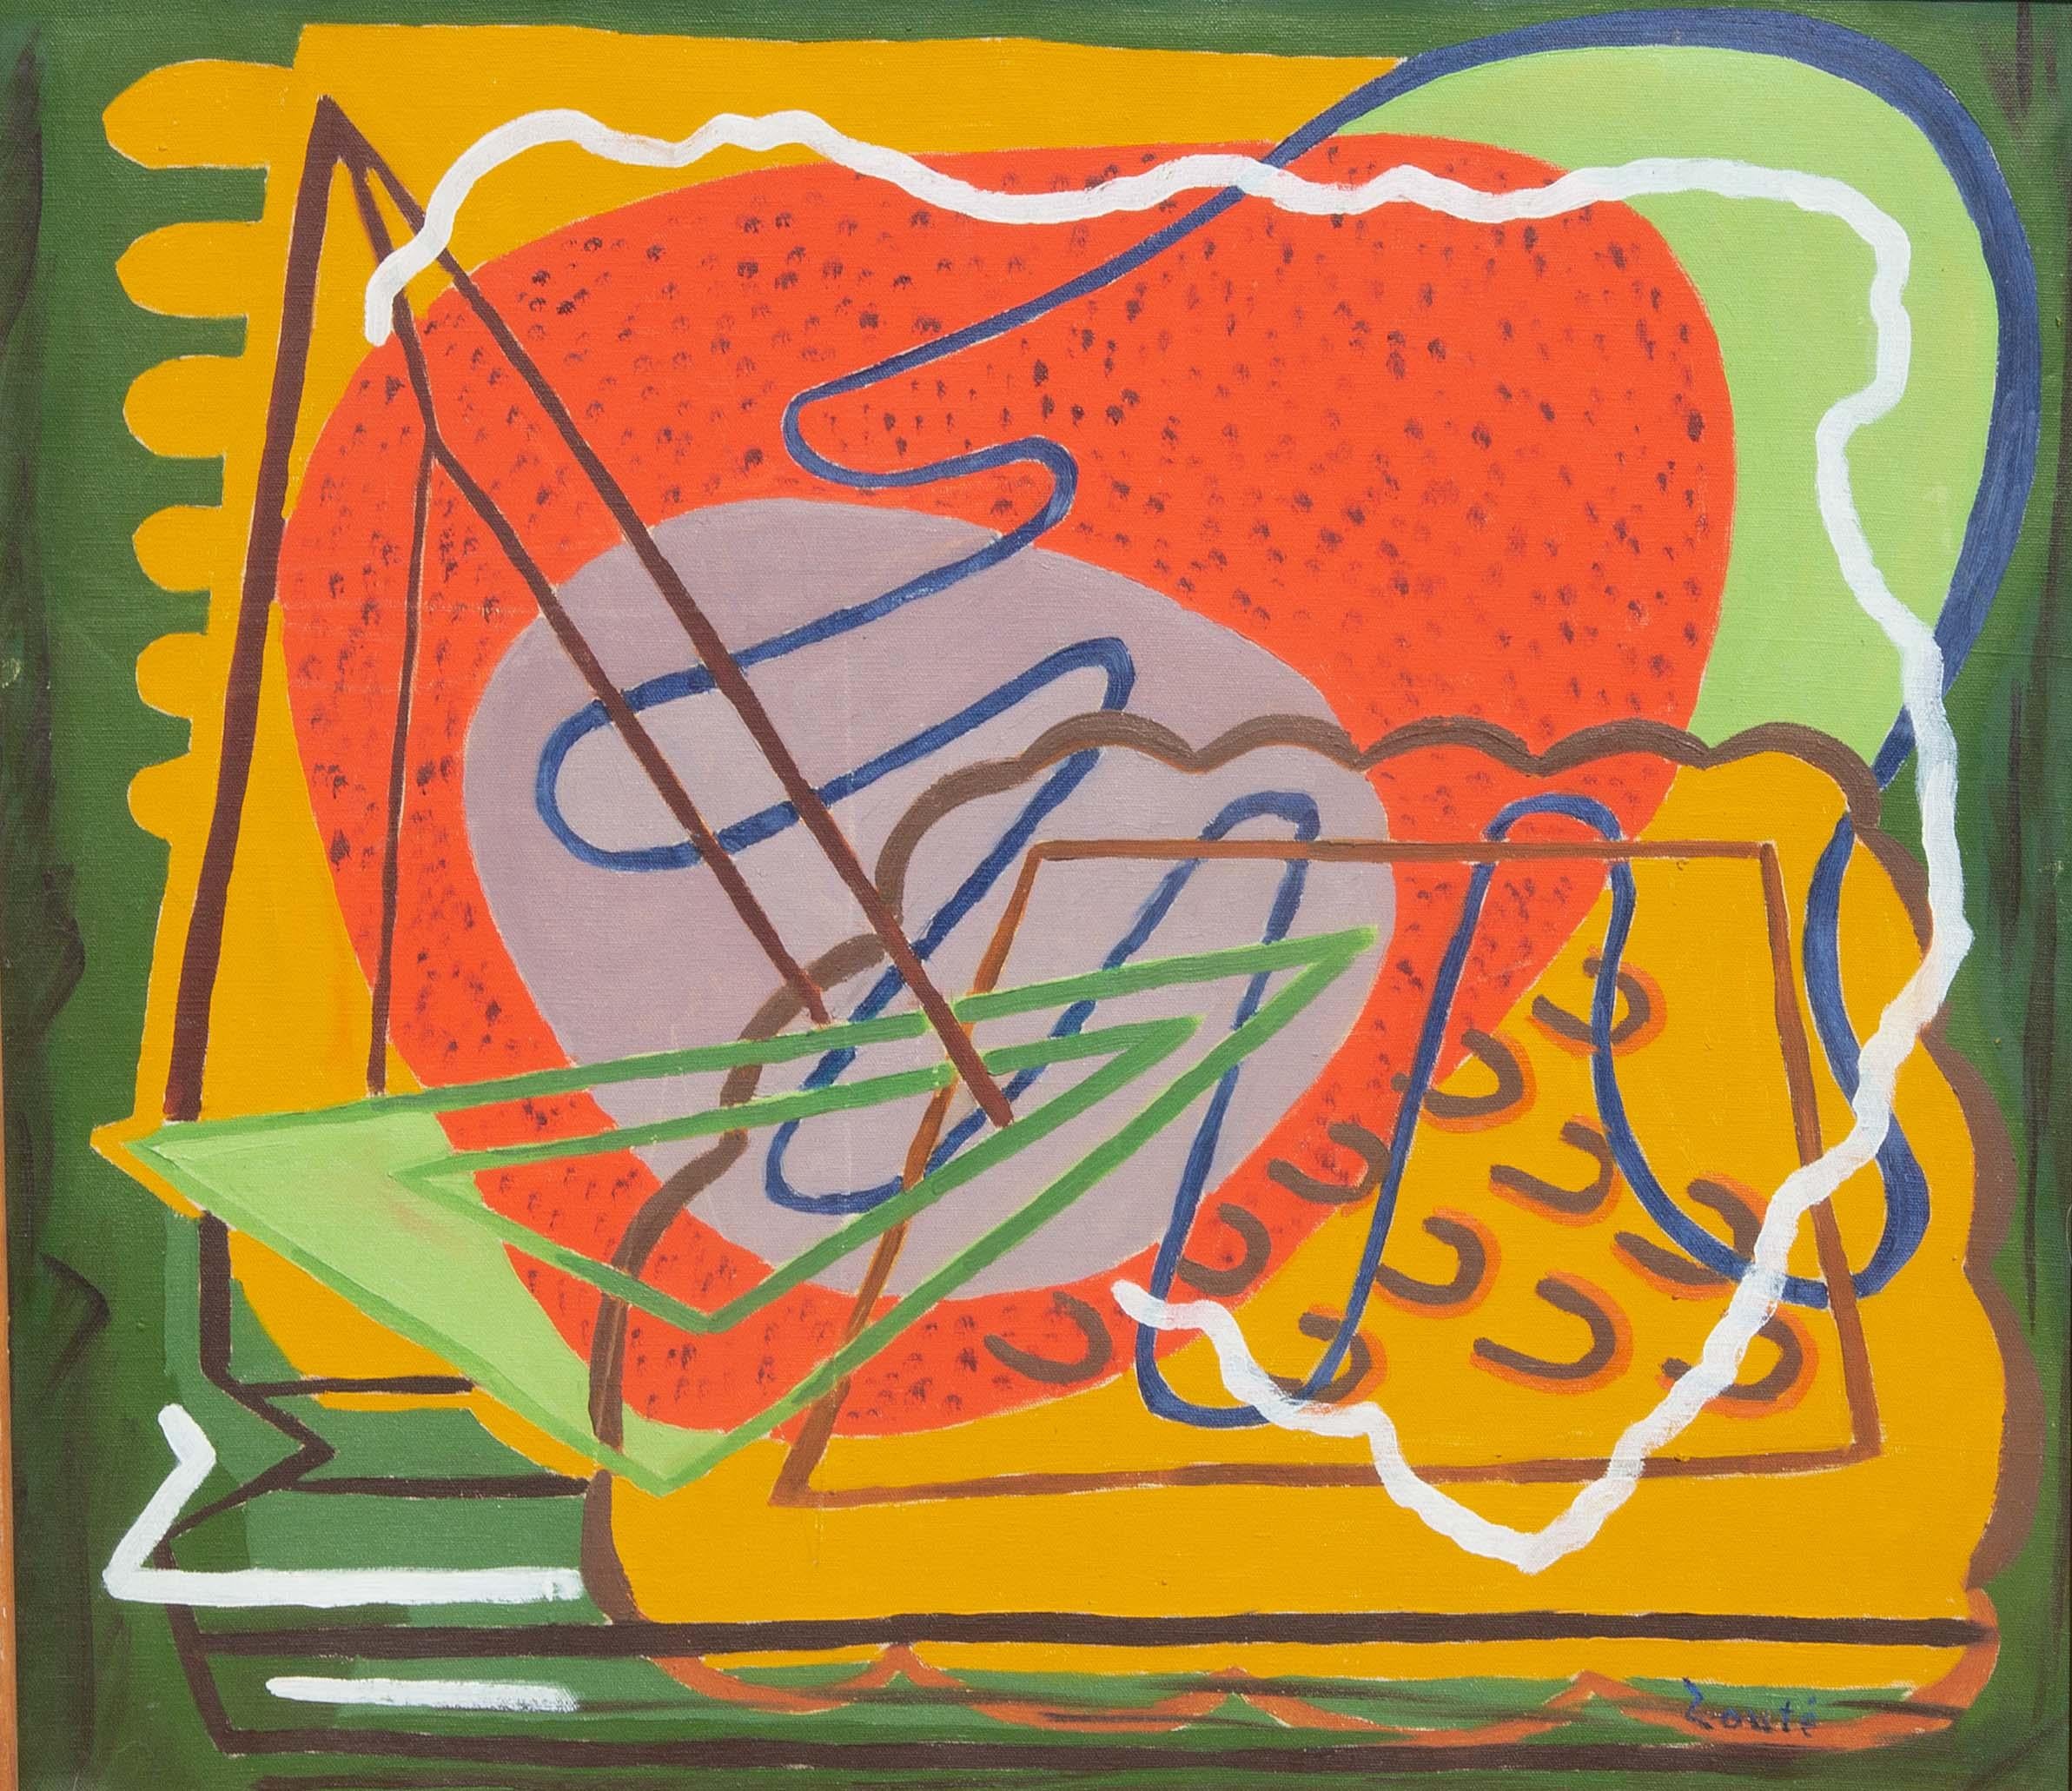 Peinture à l'huile abstraite et moderniste de Zoute. Huile sur toile montée sur carton. Peint vers les années 1940.
Zoute (né Leon Salter, 1903-1976) était autodidacte et très exposé de son vivant. Il a peint de 1940 à 1954 (il a arrêté de peindre à